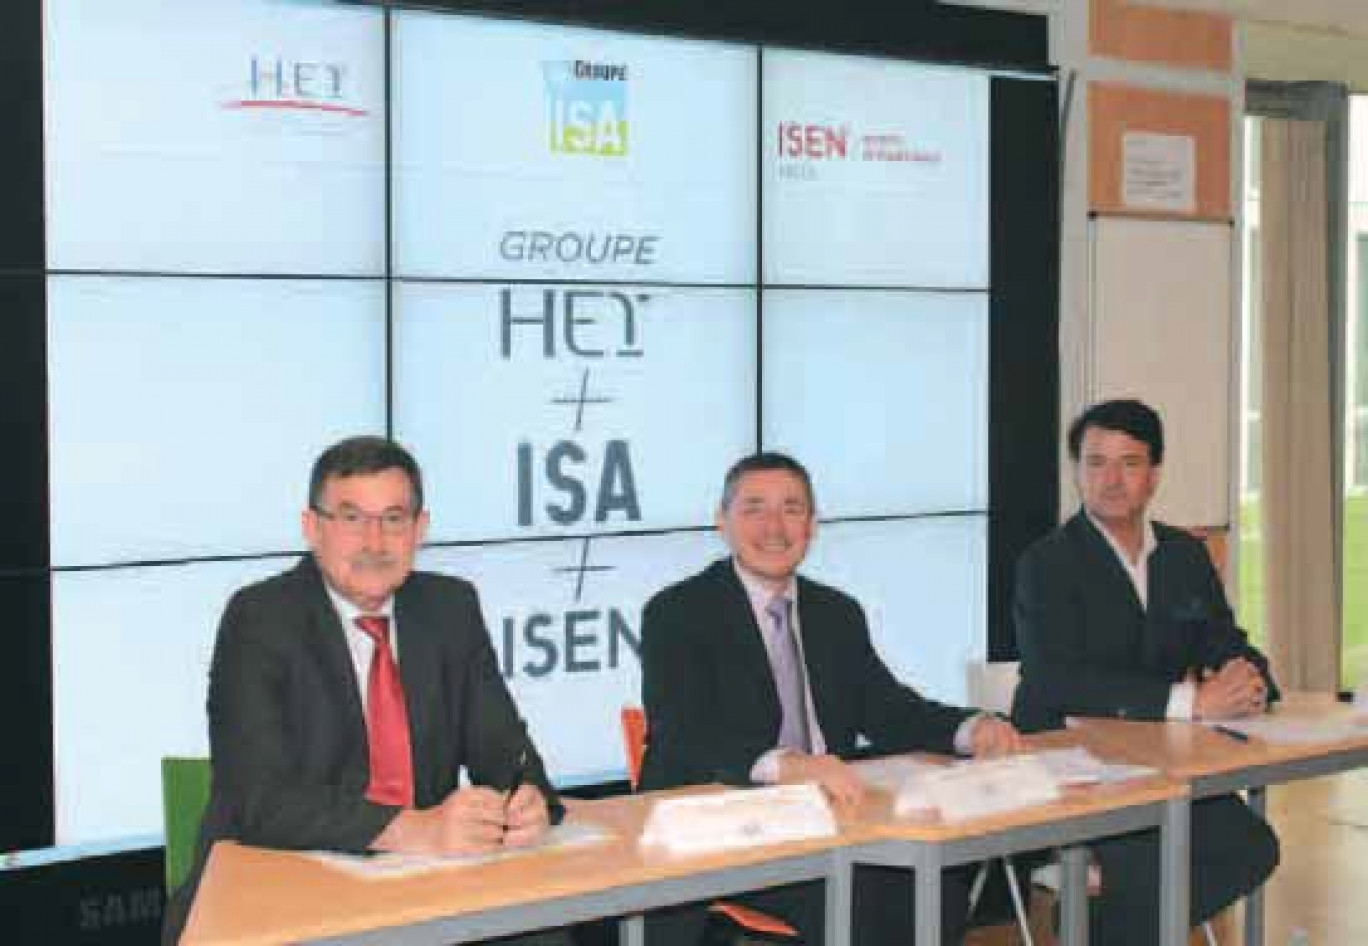 La direction générale du comité exécutif du nouveau groupe a été confiée à Jean-Marc Idoux, jusqu’alors directeur d’HEI (au centre). Il est épaulé par deux directeurs généraux délégués, Pascal Codron, jusqu’alors directeur général du groupe ISA (à gauche), et François Dumoulin, délégué général du Groupe ISEN.